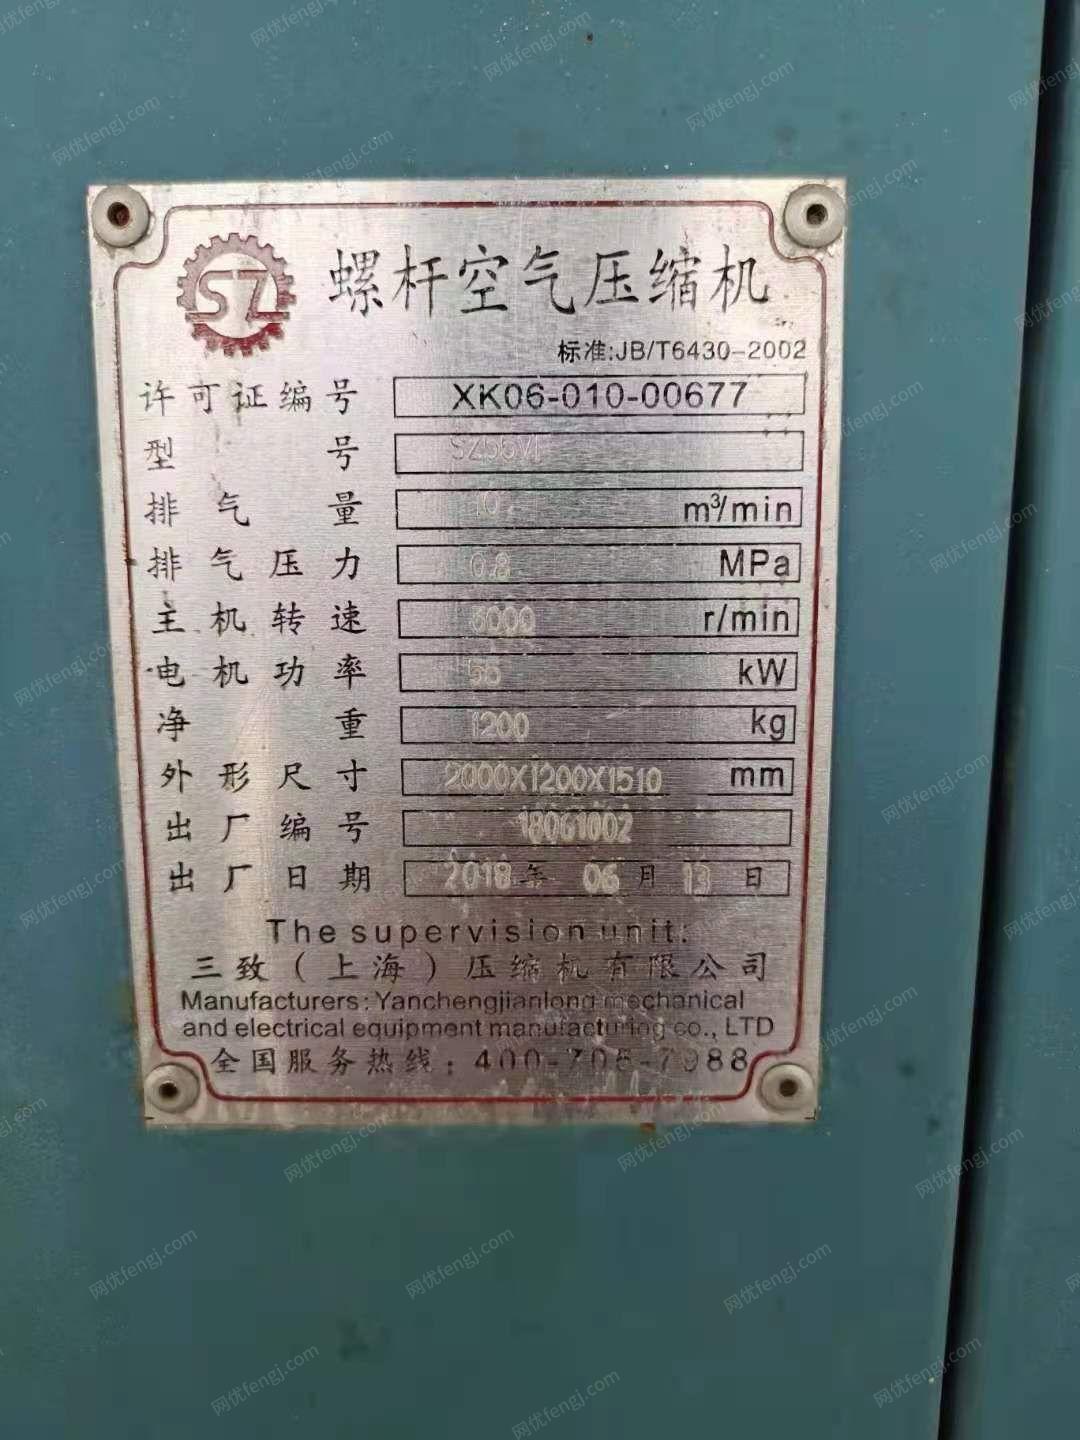 纺织厂出售上海三致55KW螺杆式空压机2台,有一台是去年买的,一台进价5万左右,